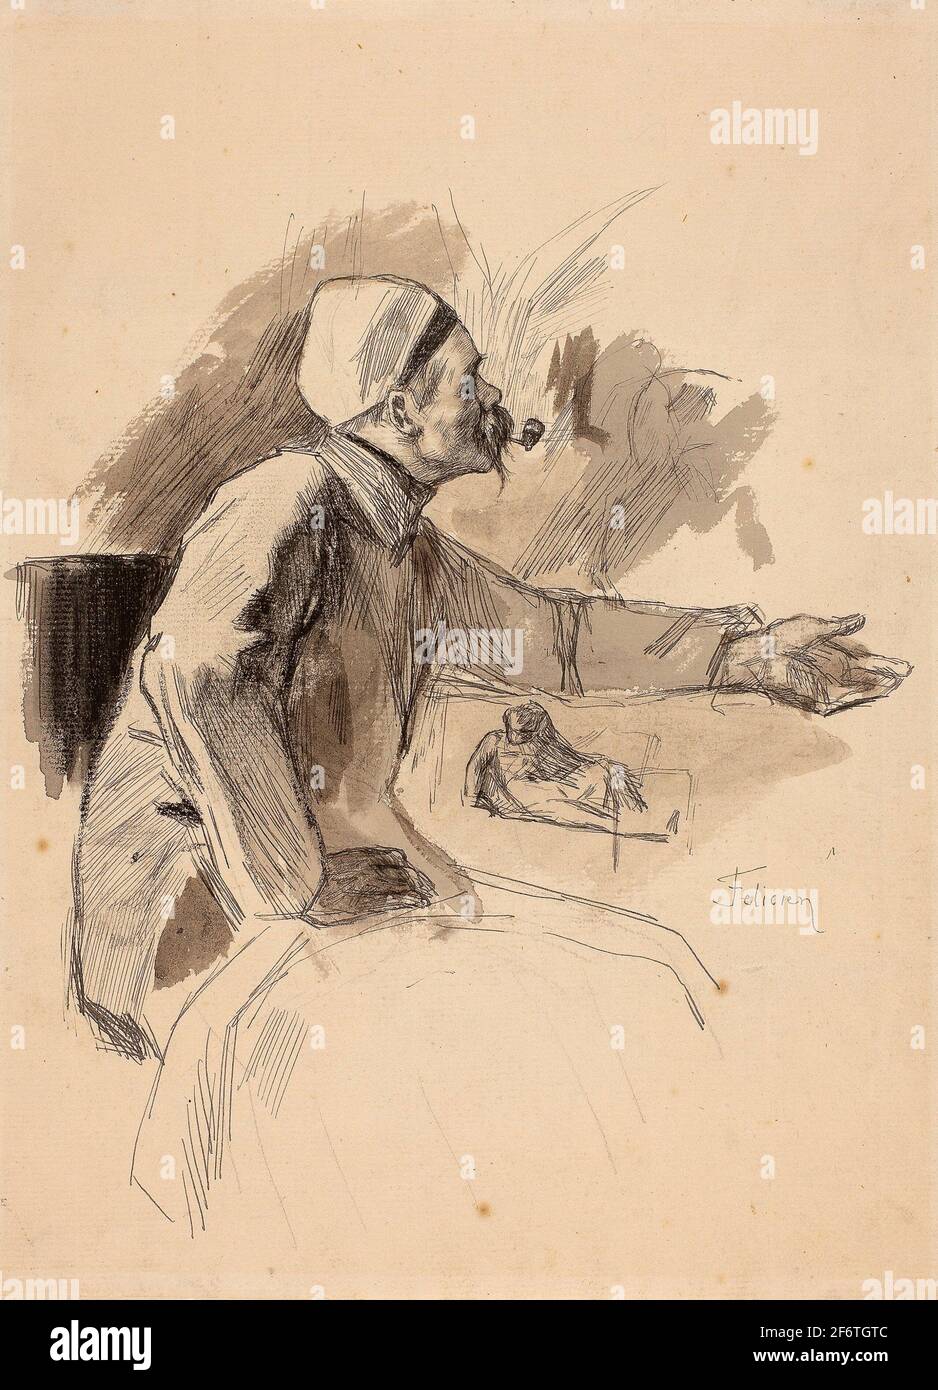 Autor: Flicien ROPS. Hombre sentado con brazo izquierdo extendido - Flicien ROPS Belga, 1833-1898. Pluma y tinta negra, con pincel y lavado gris y negro Foto de stock